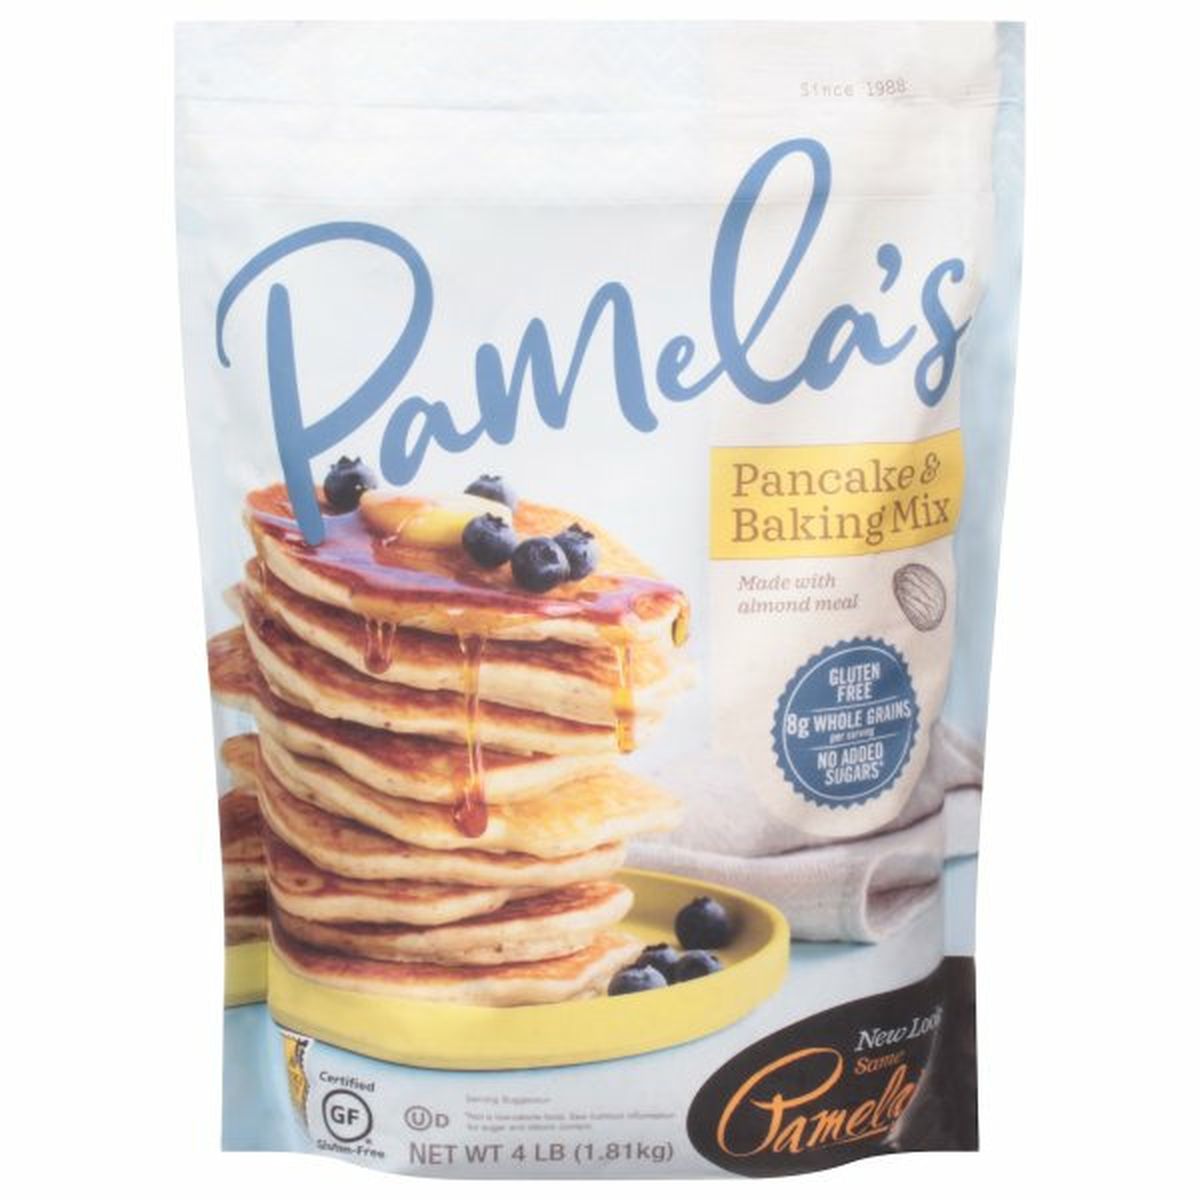 Calories in Pamela's Pancake & Baking Mix, Gluten Free